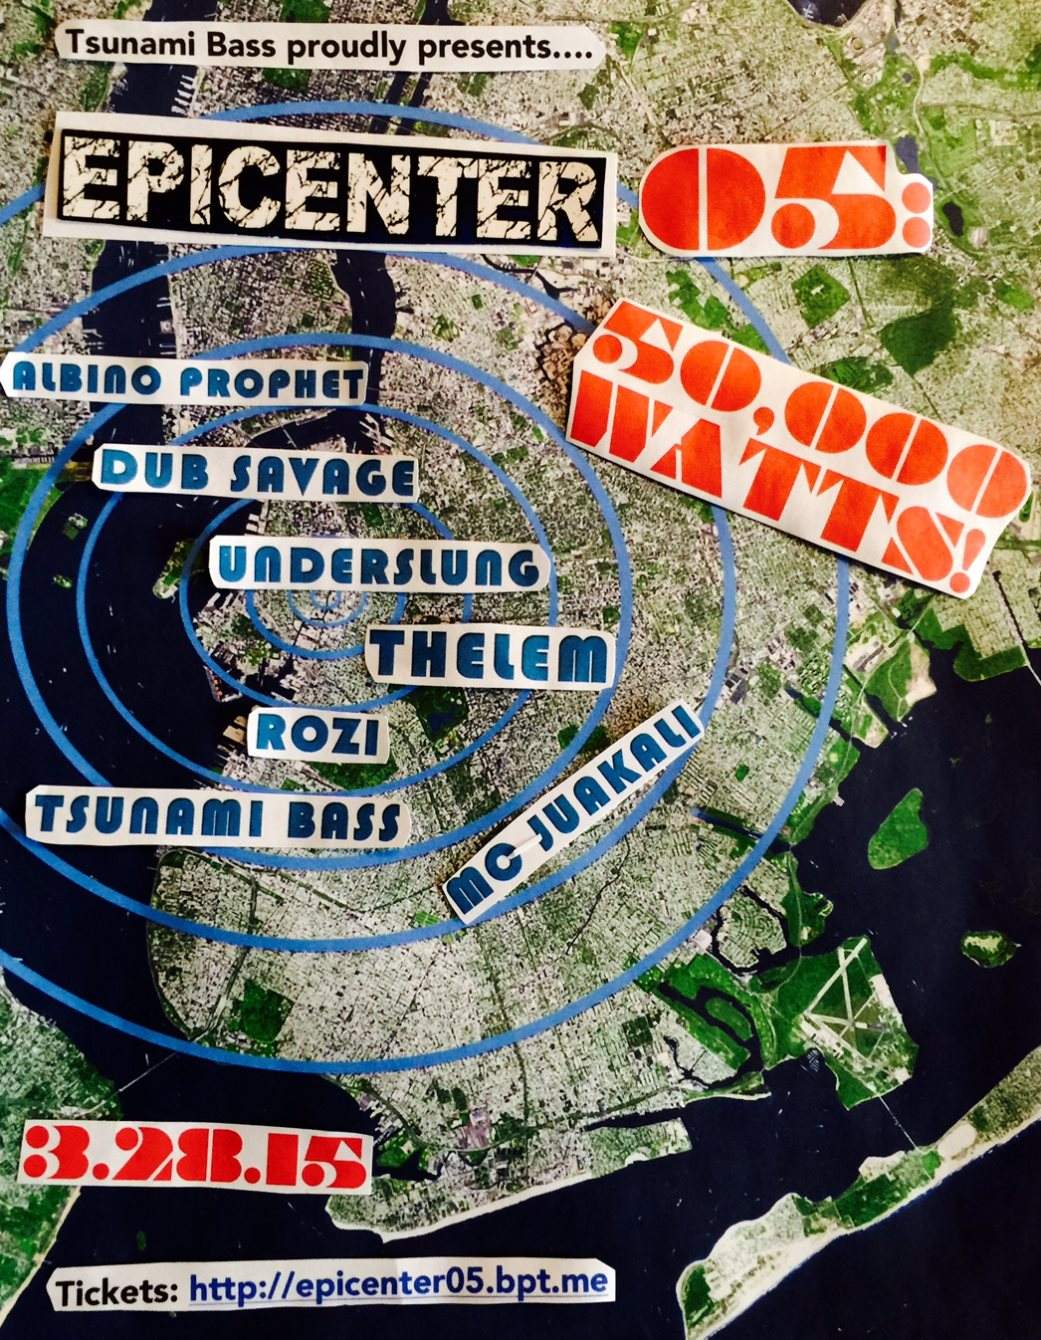 Epicenter05: 50,000 Watts! - Thelem, Underslung, Dub Savage - フライヤー表